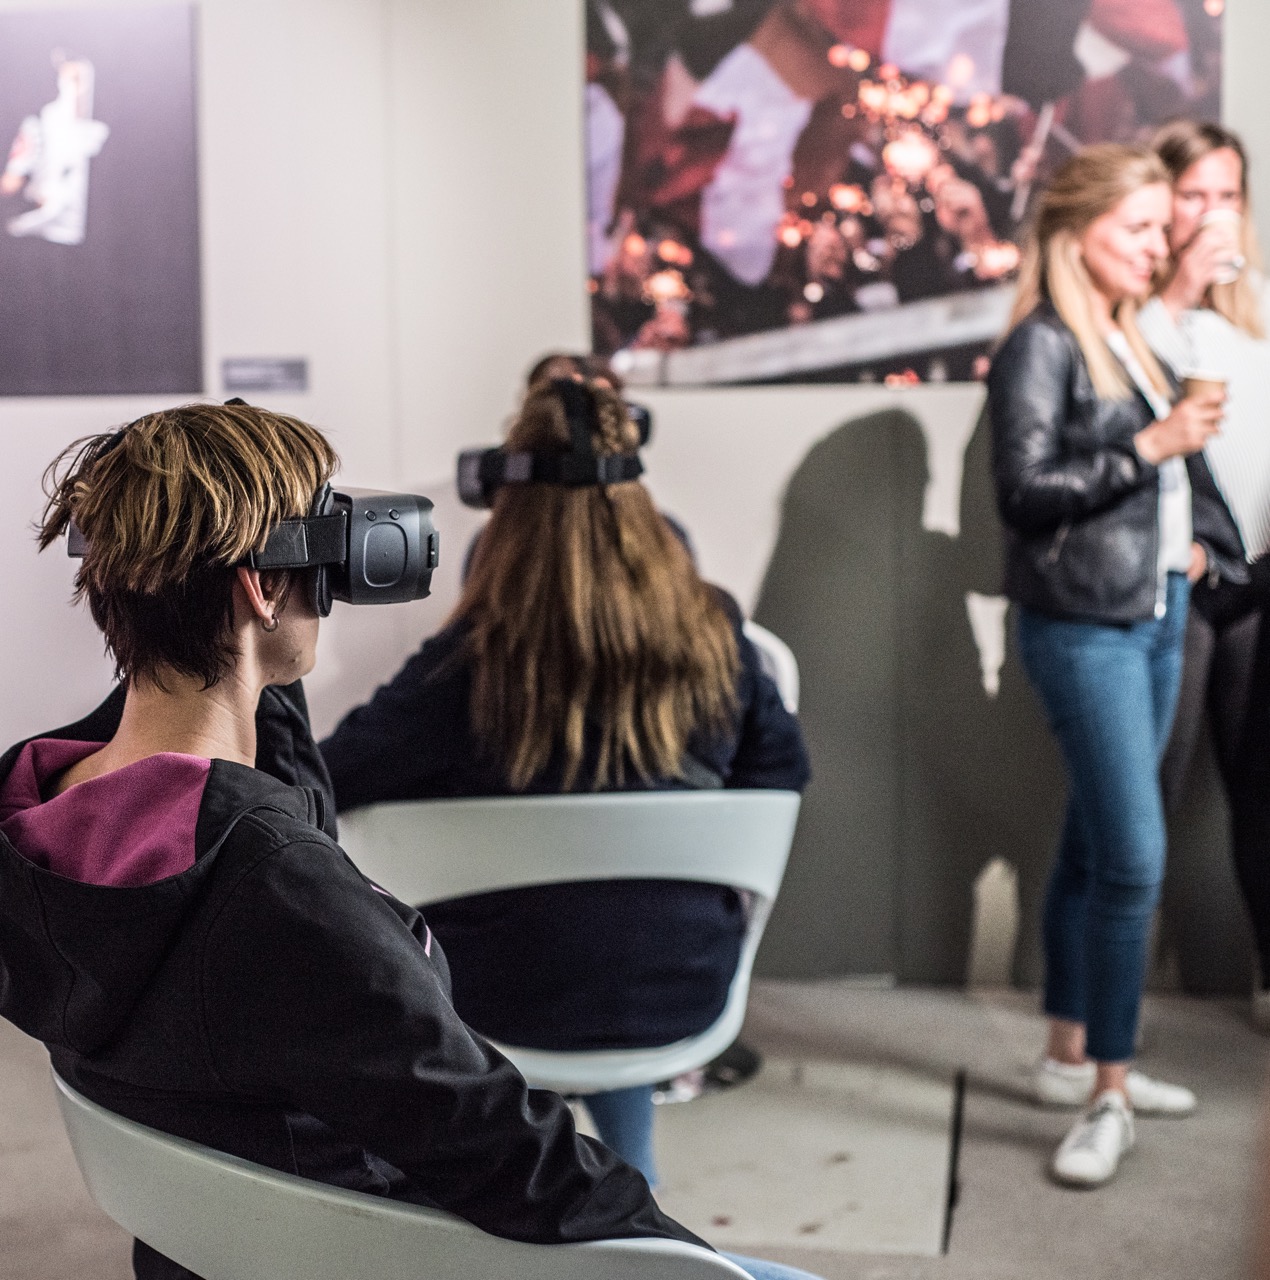 In der 3D-Lounge konnten Besucher in den „Cyberspace“ eintauchen und vergangene Ausstellungen dreidimensional erleben.